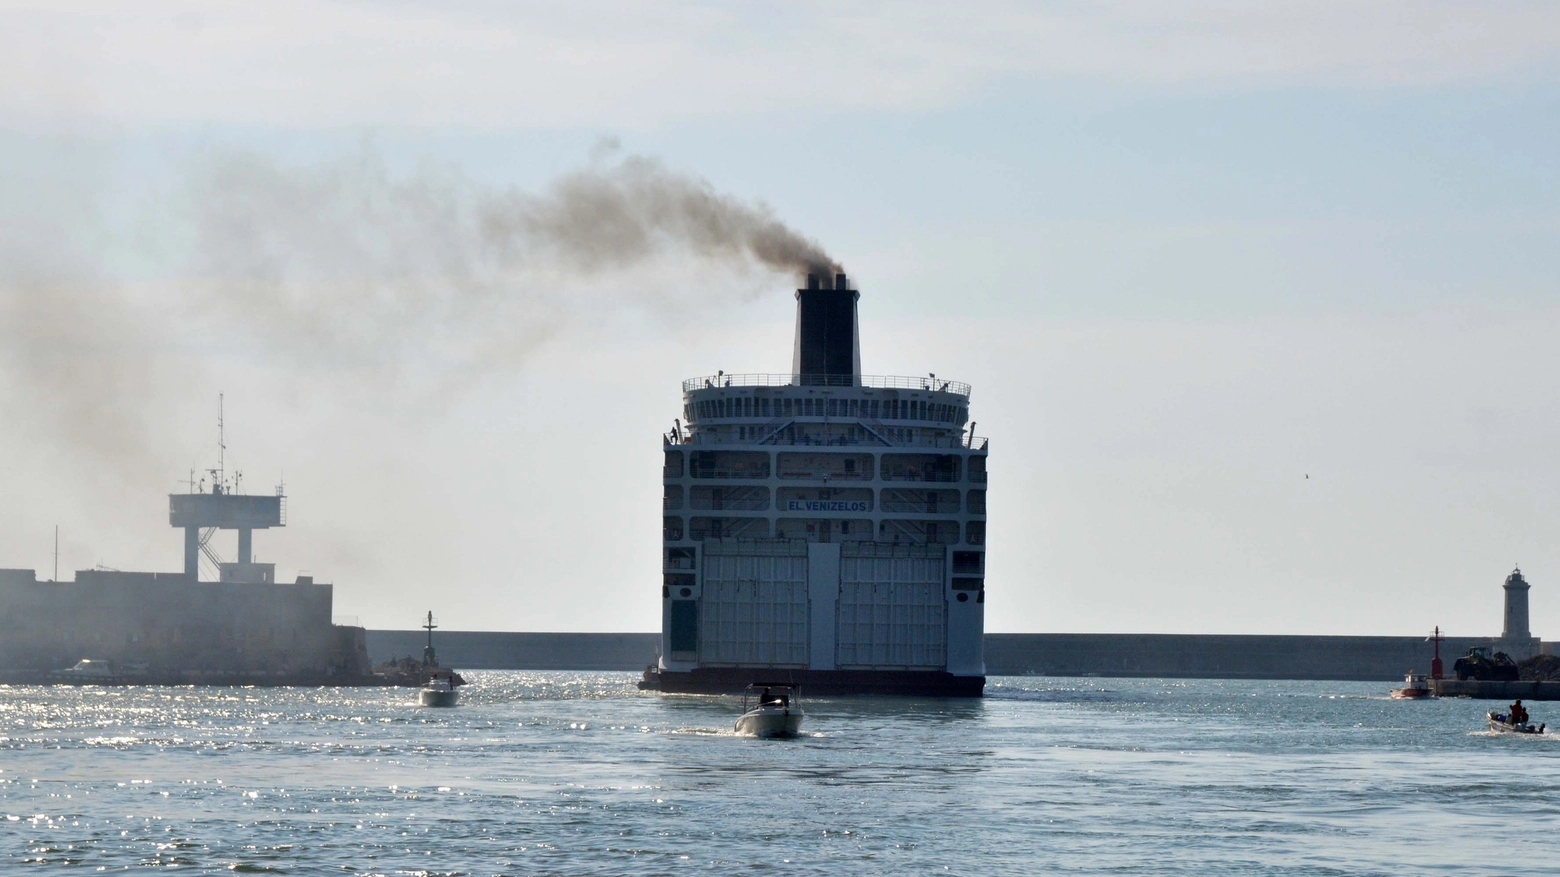 La nave riparte da Livorno per la Grecia (Foto Simone Lanari)